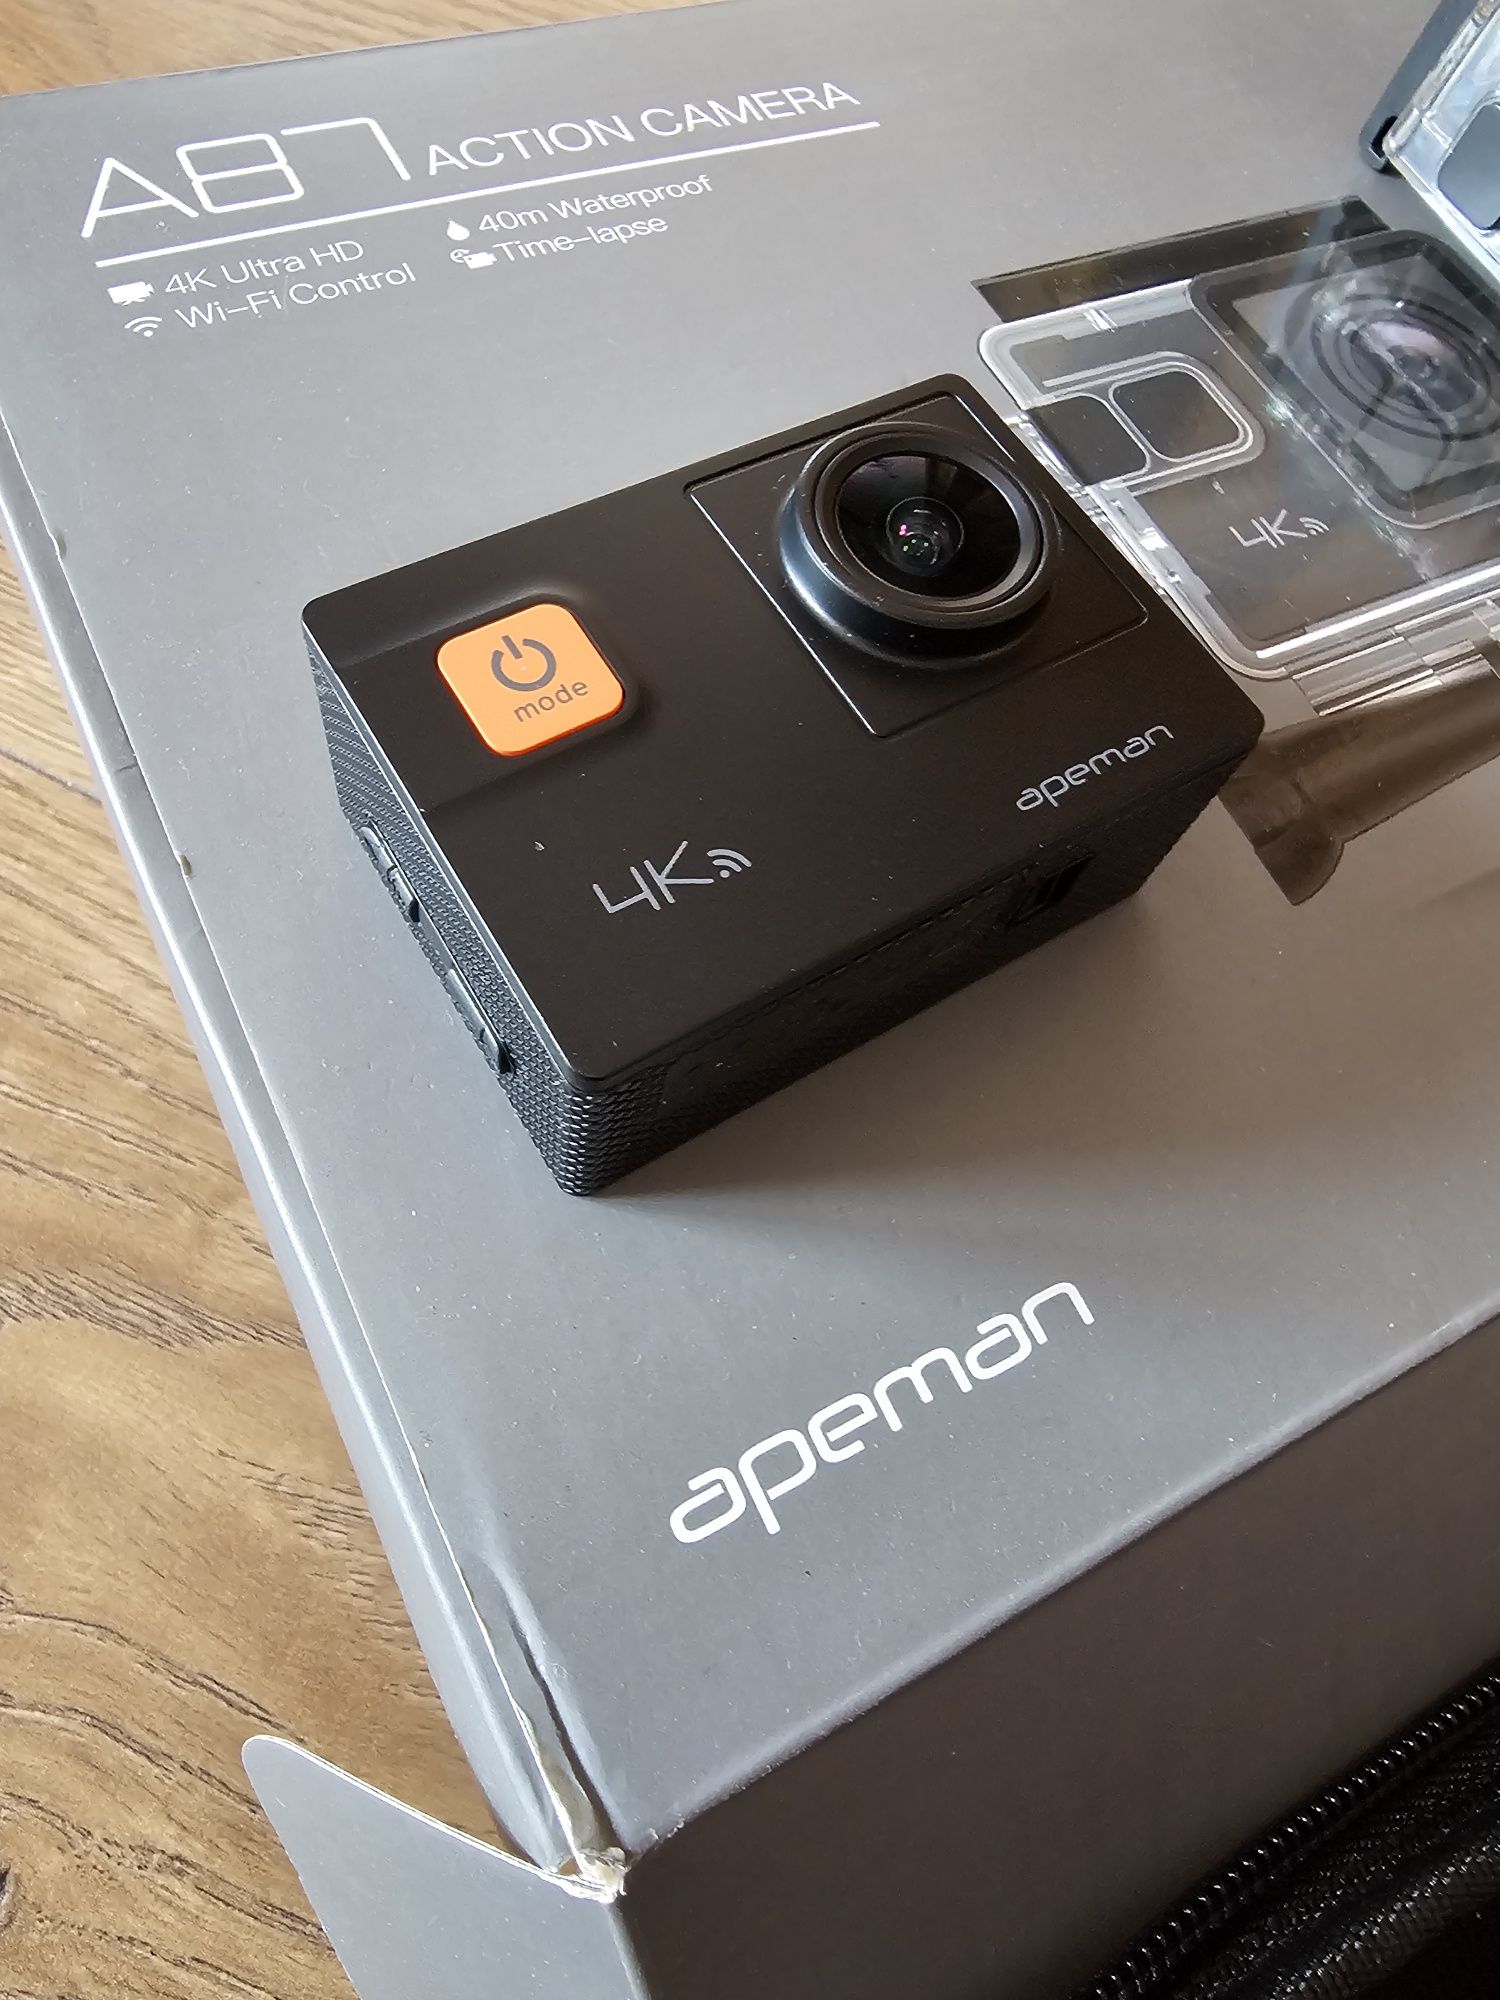 Sportowa kamera Apeman A87 z wyposażeniem